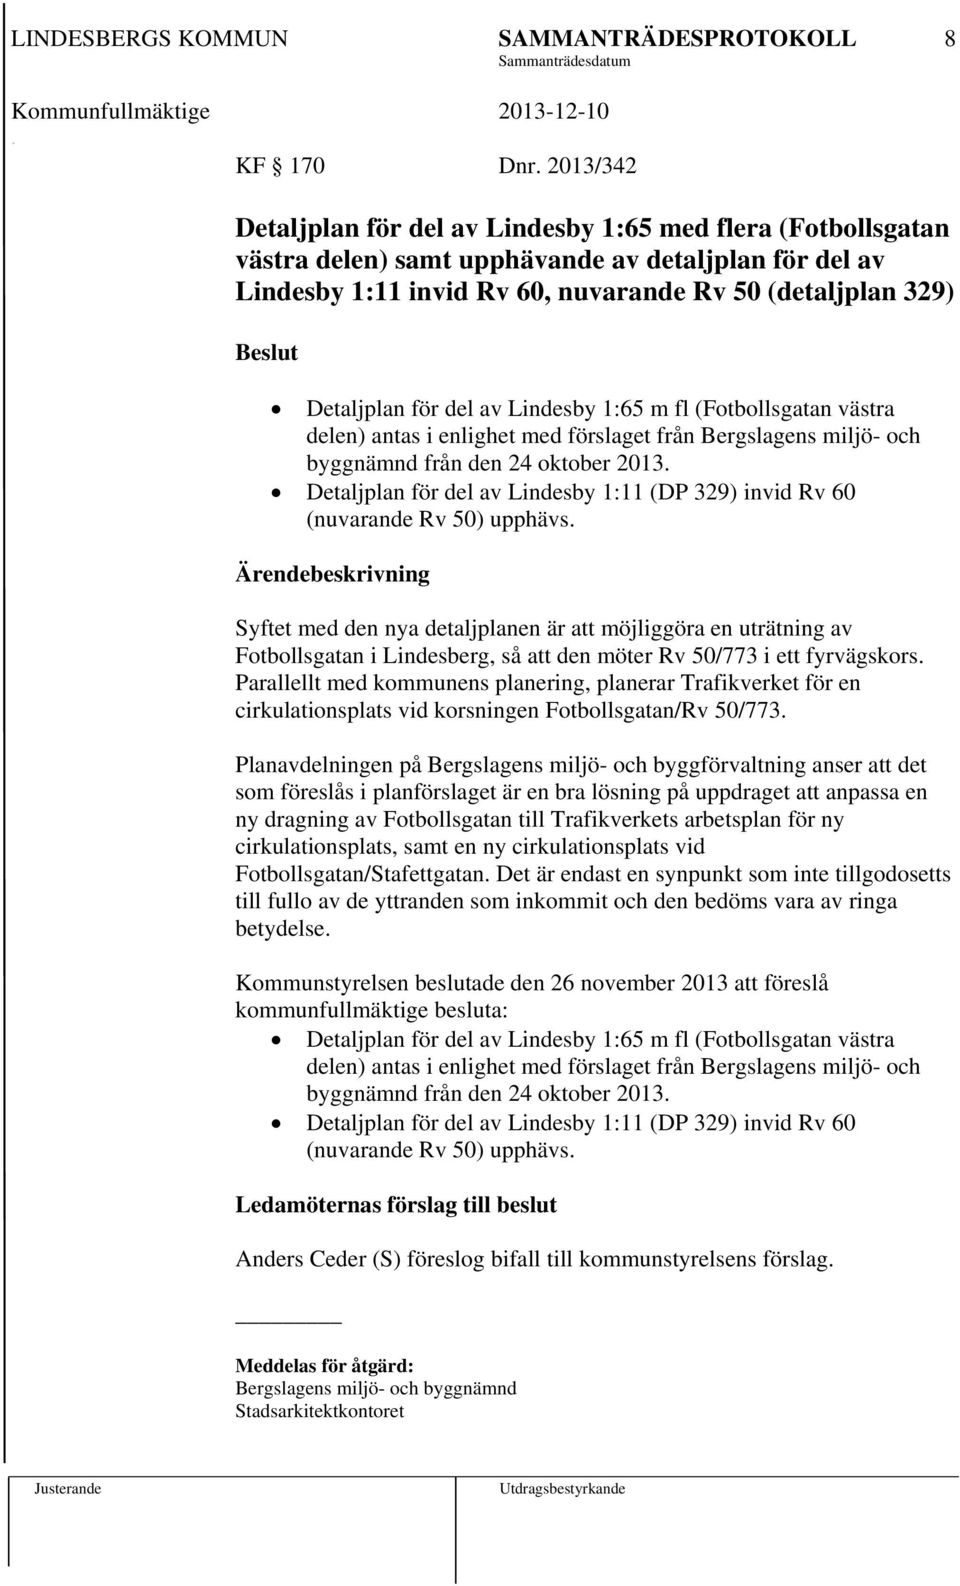 Detaljplan för del av Lindesby 1:65 m fl (Fotbollsgatan västra delen) antas i enlighet med förslaget från Bergslagens miljö- och byggnämnd från den 24 oktober 2013.